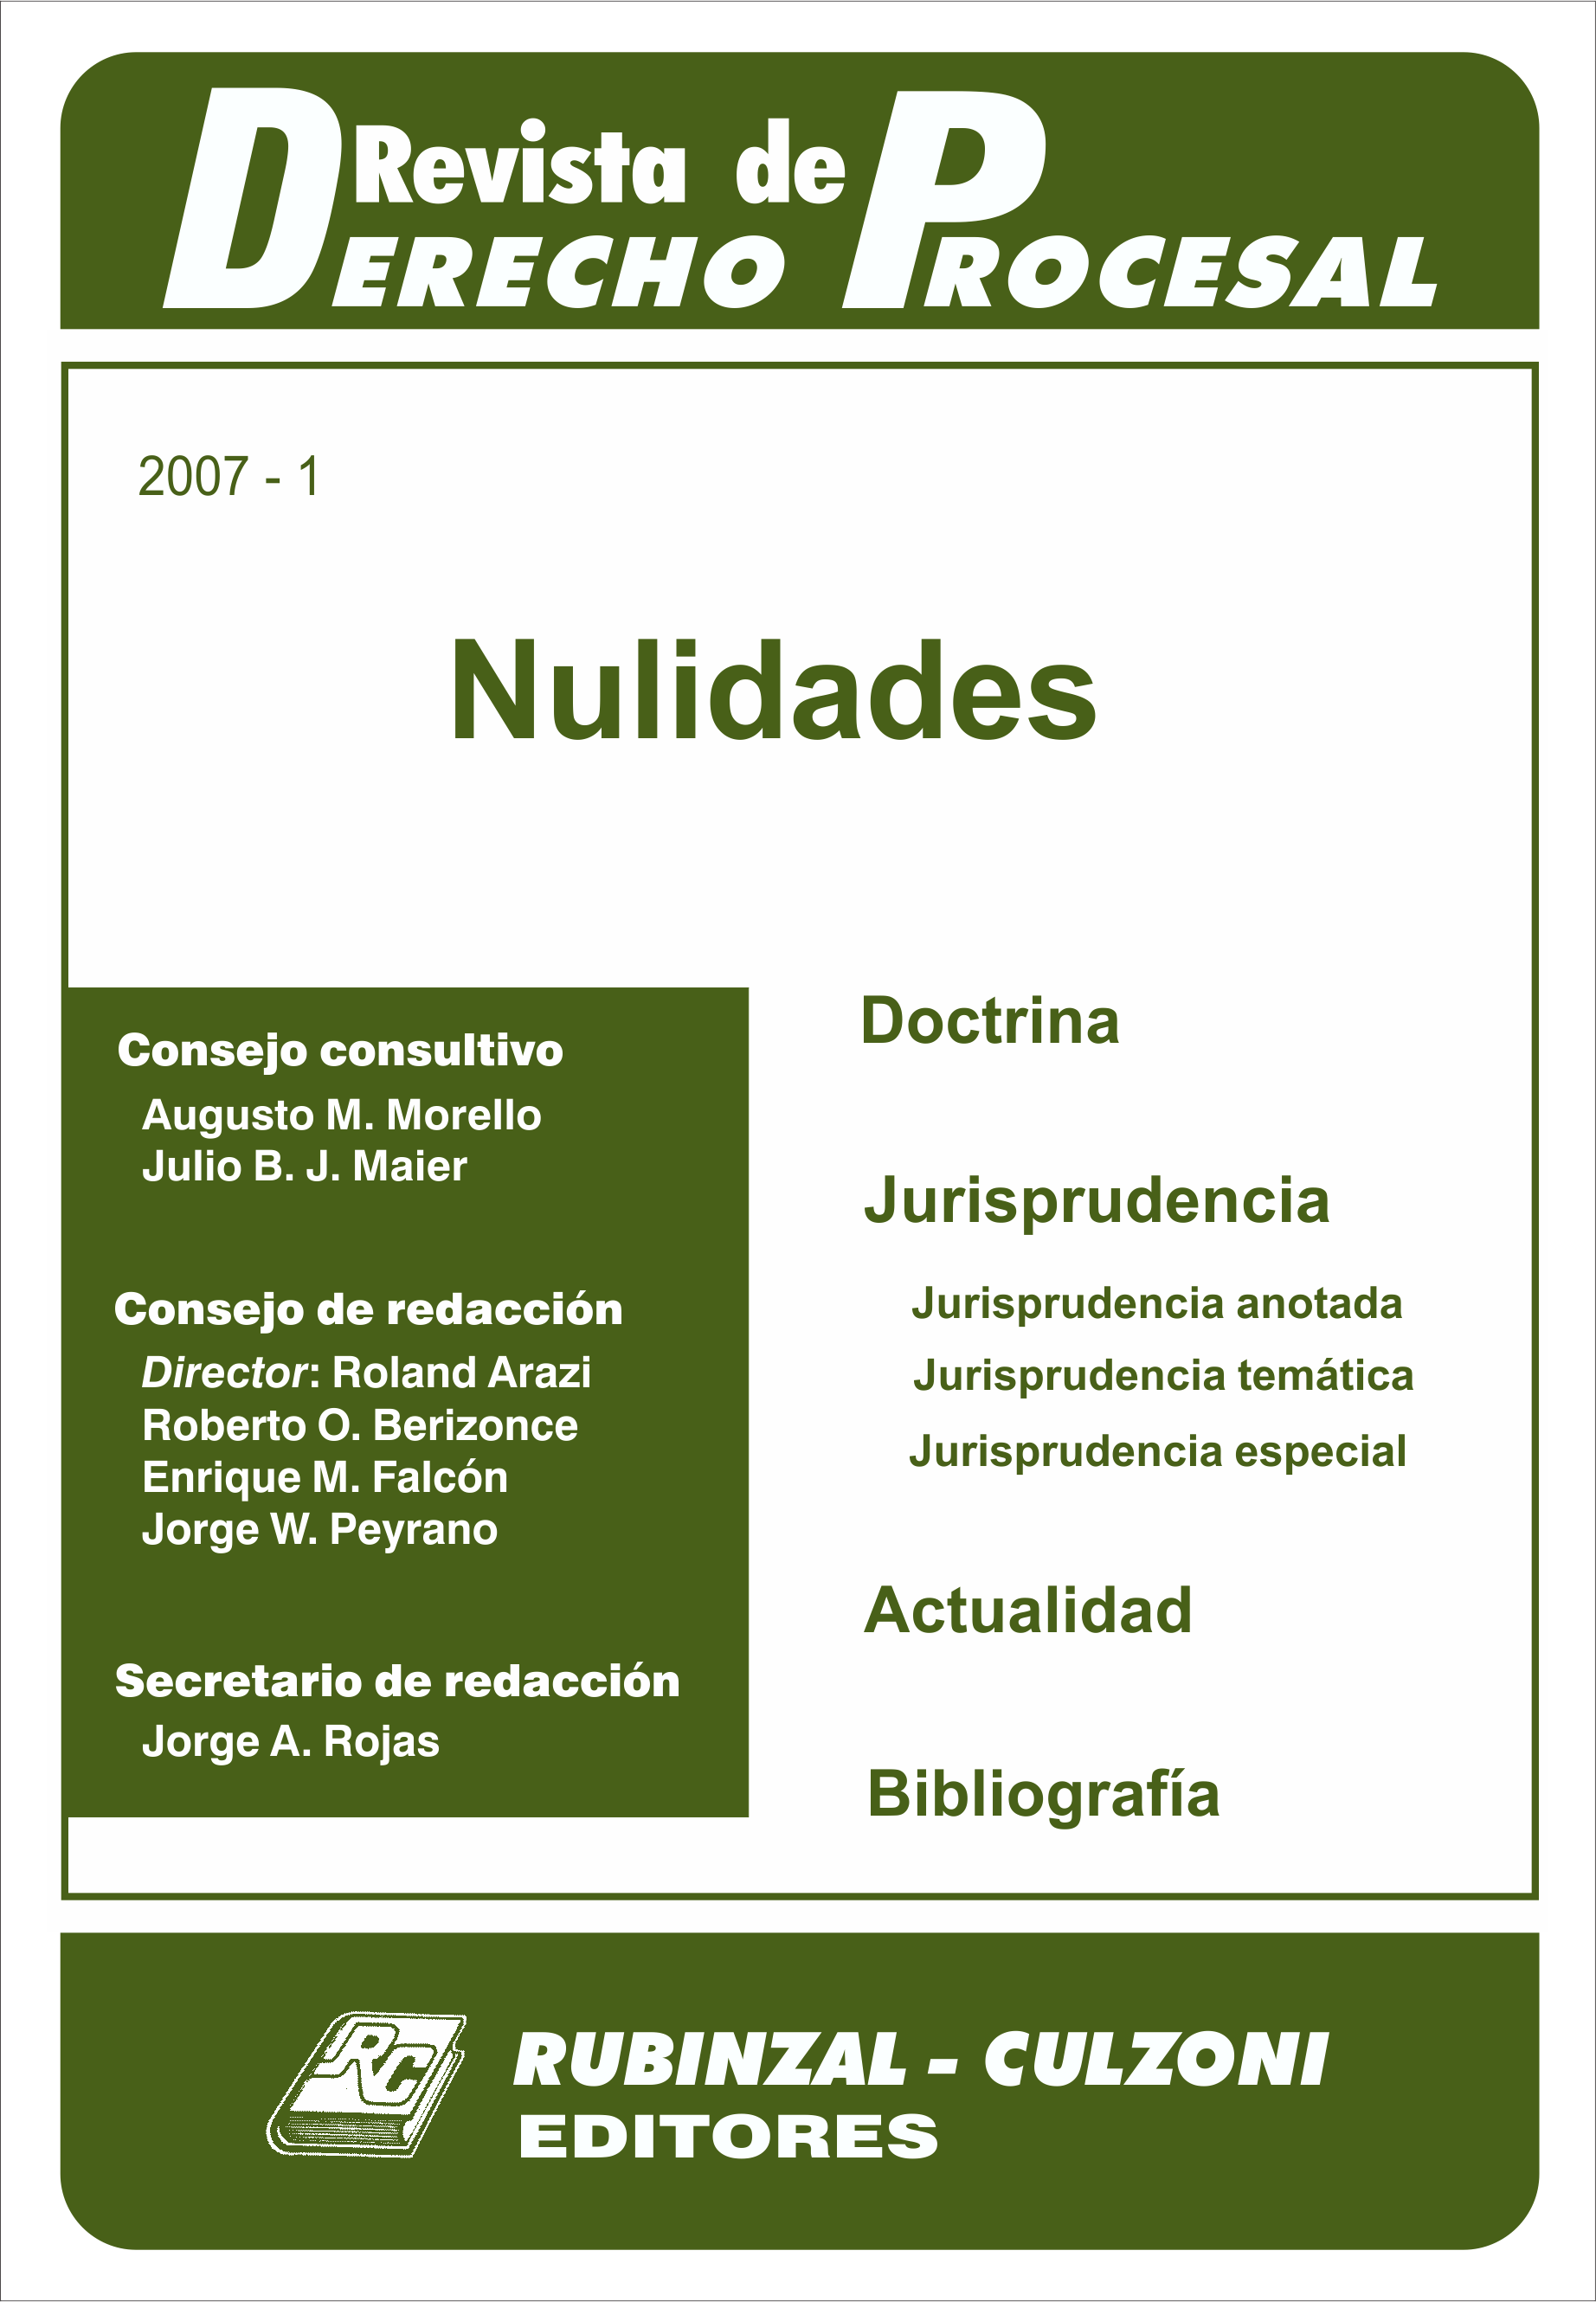 Revista de Derecho Procesal - Nulidades